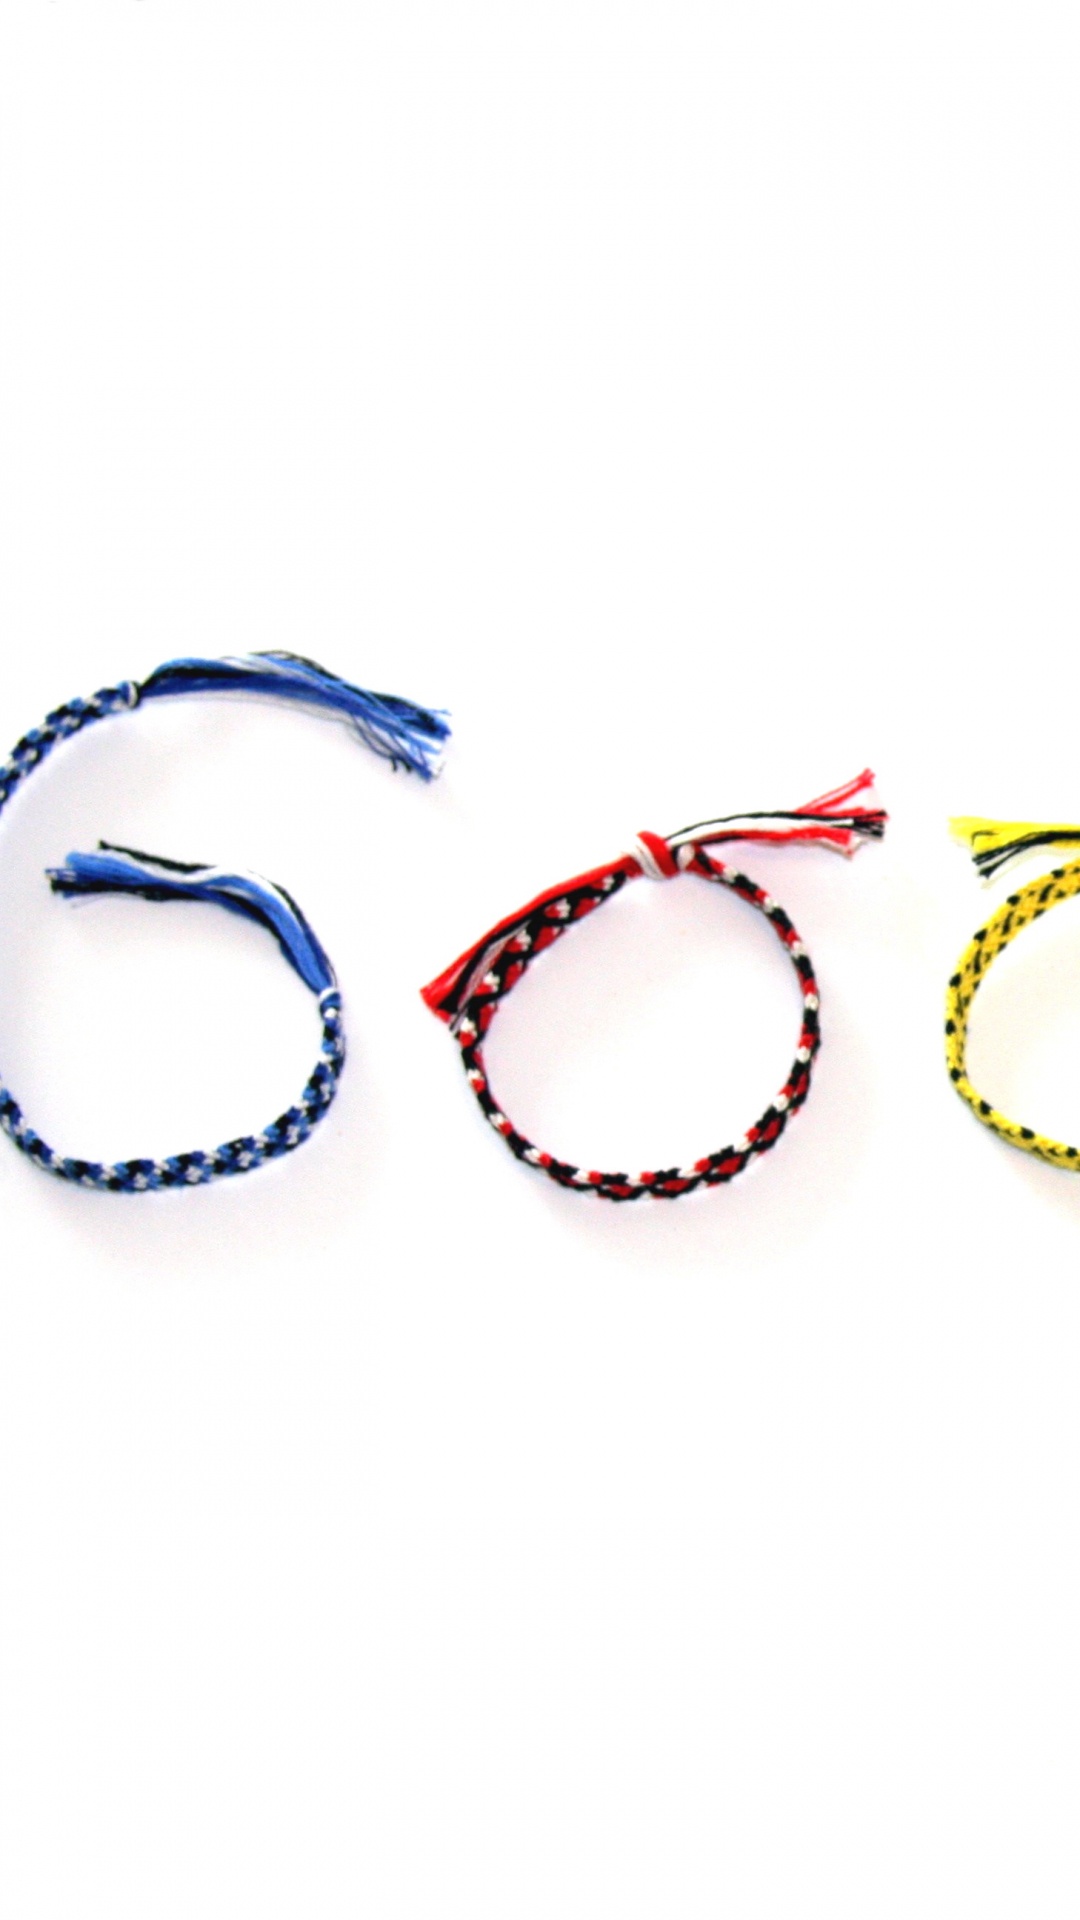 Logotipo de Google, Google, Accesorio de Moda, la Joyería Del Cuerpo, Garabato de Google. Wallpaper in 1080x1920 Resolution